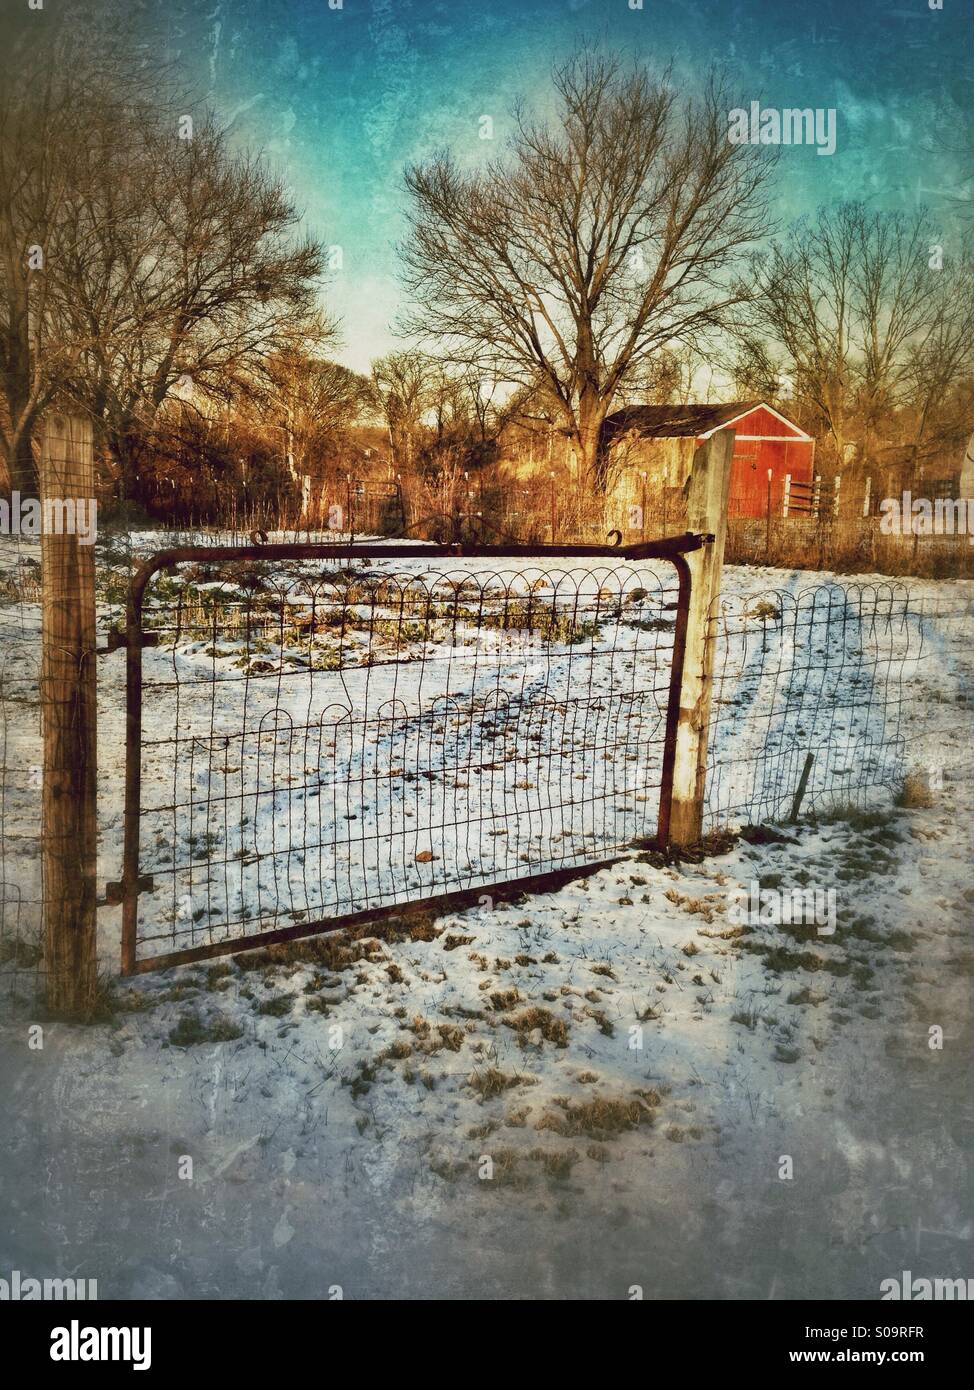 Une grille rouillée dans la neige avec une grange rouge à l'arrière-plan. Banque D'Images